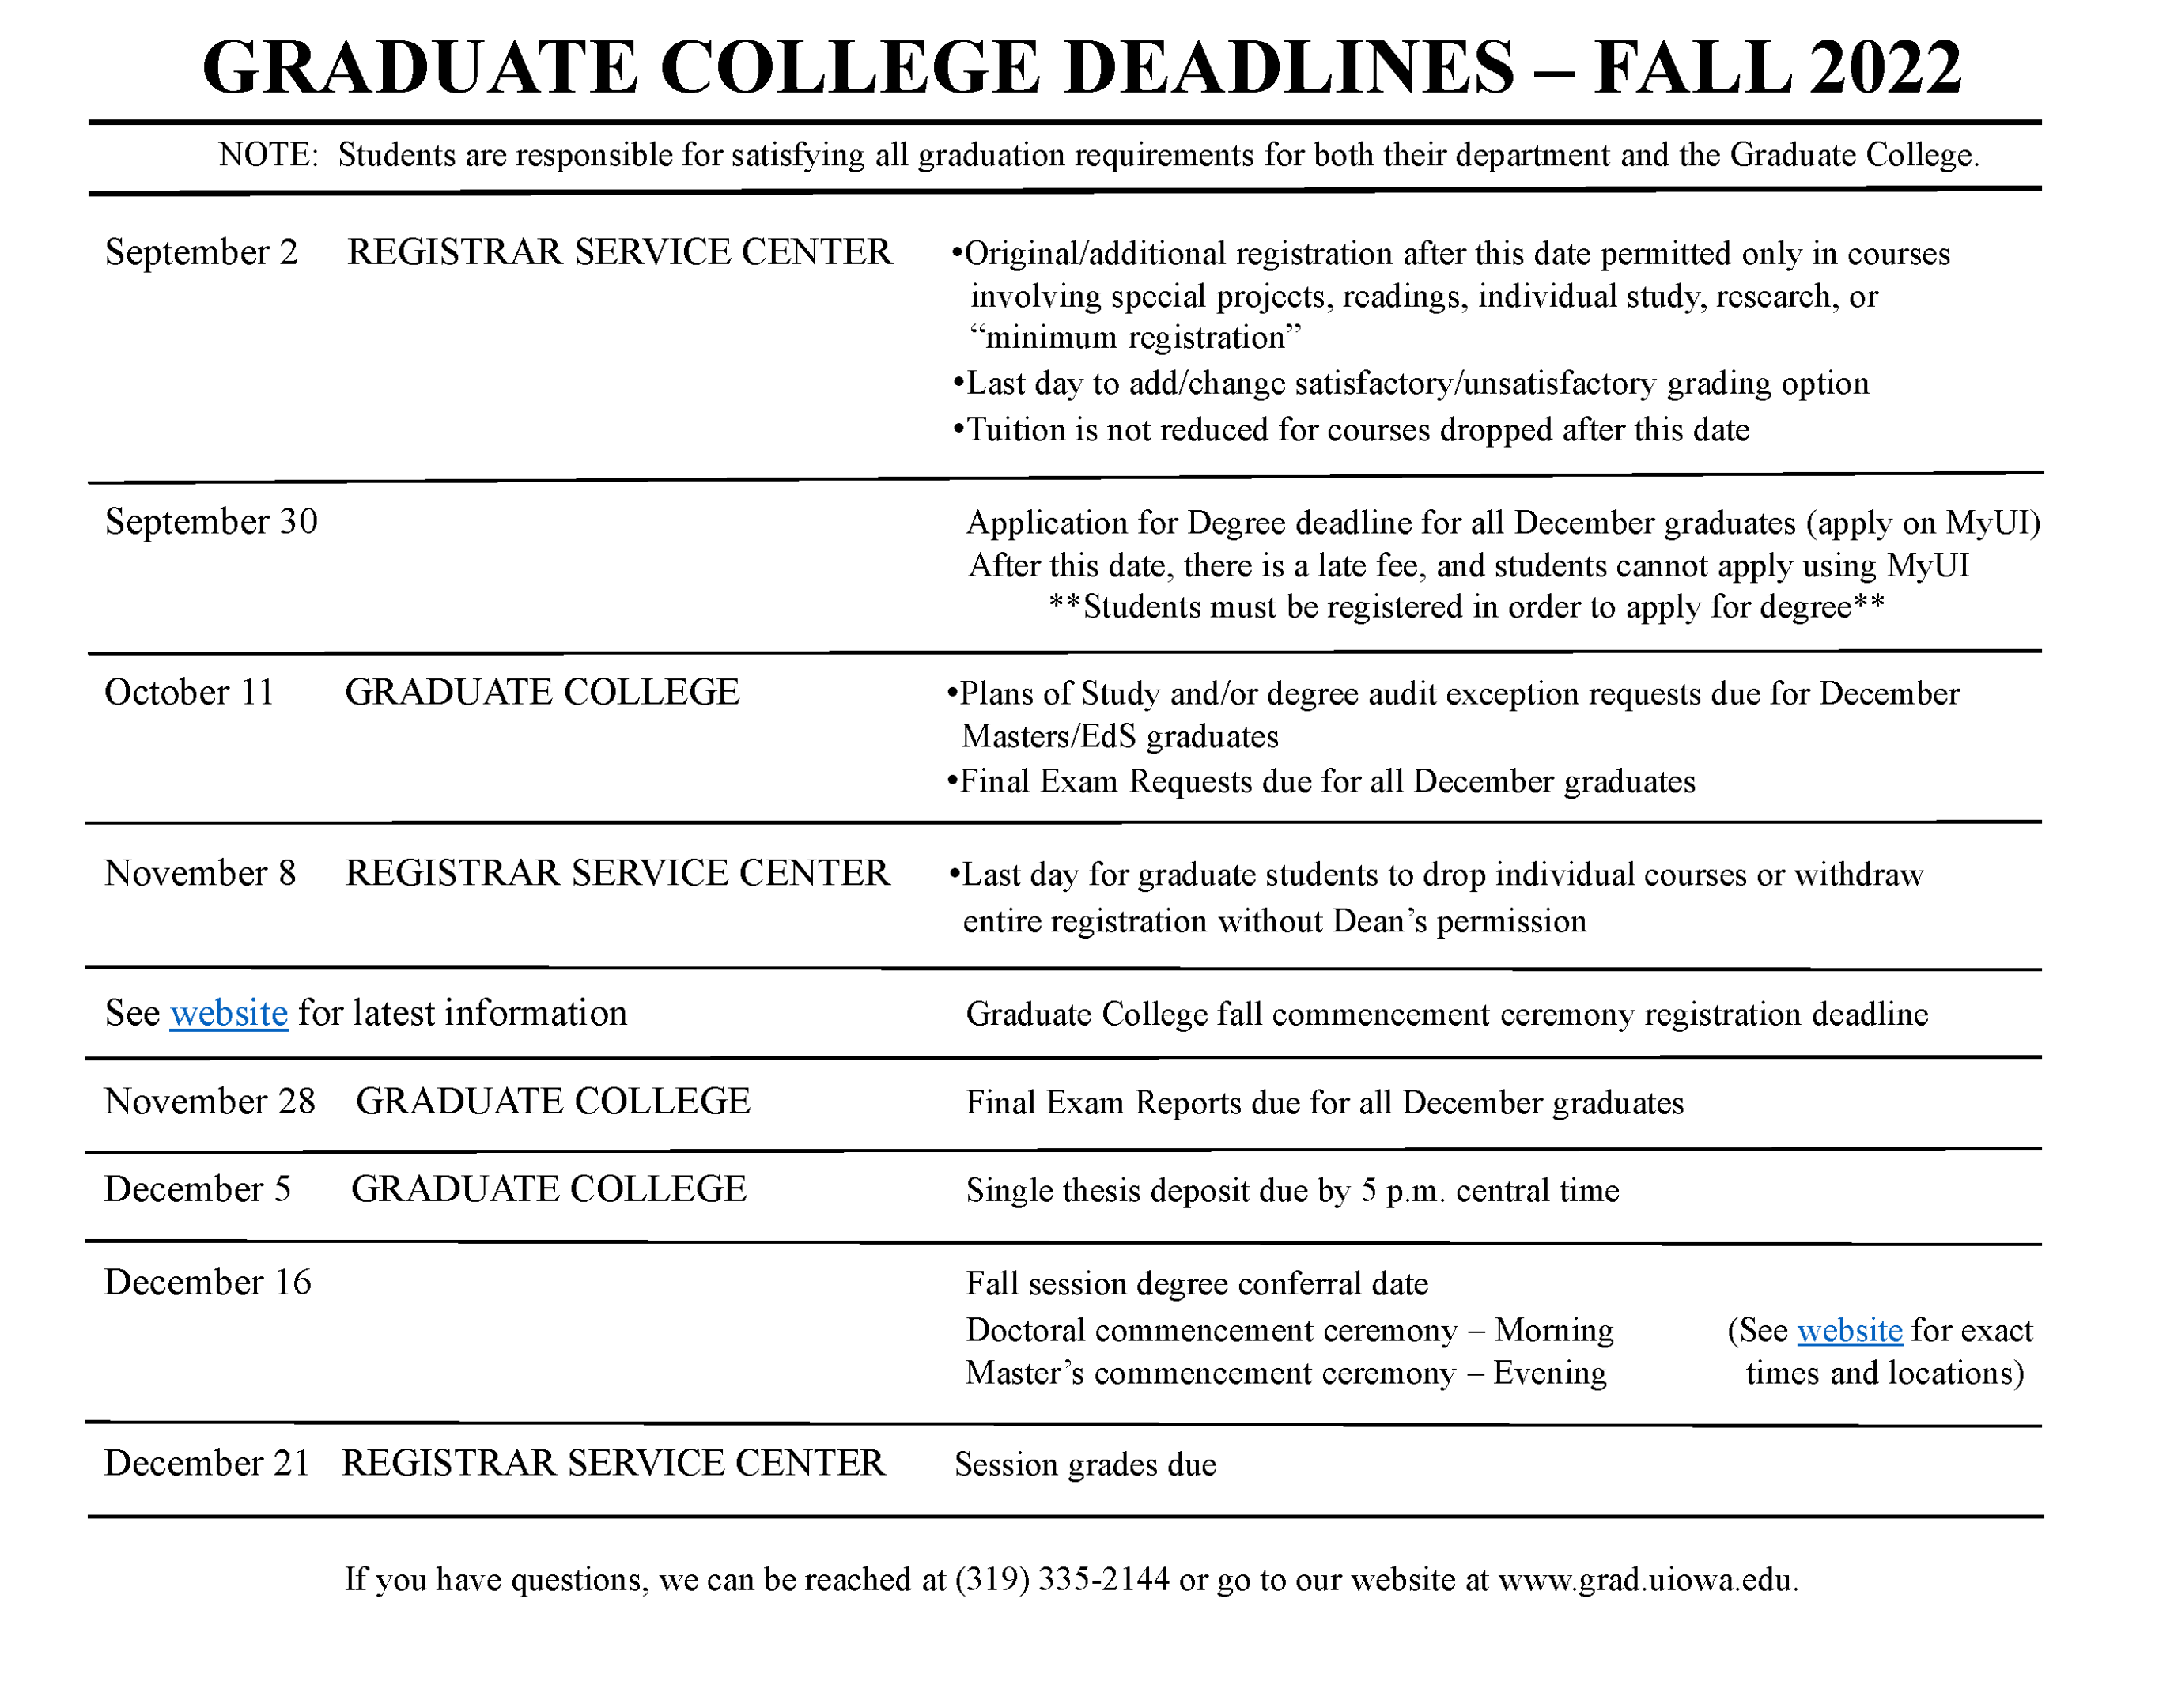 Fall 2022 Grad College Deadlines